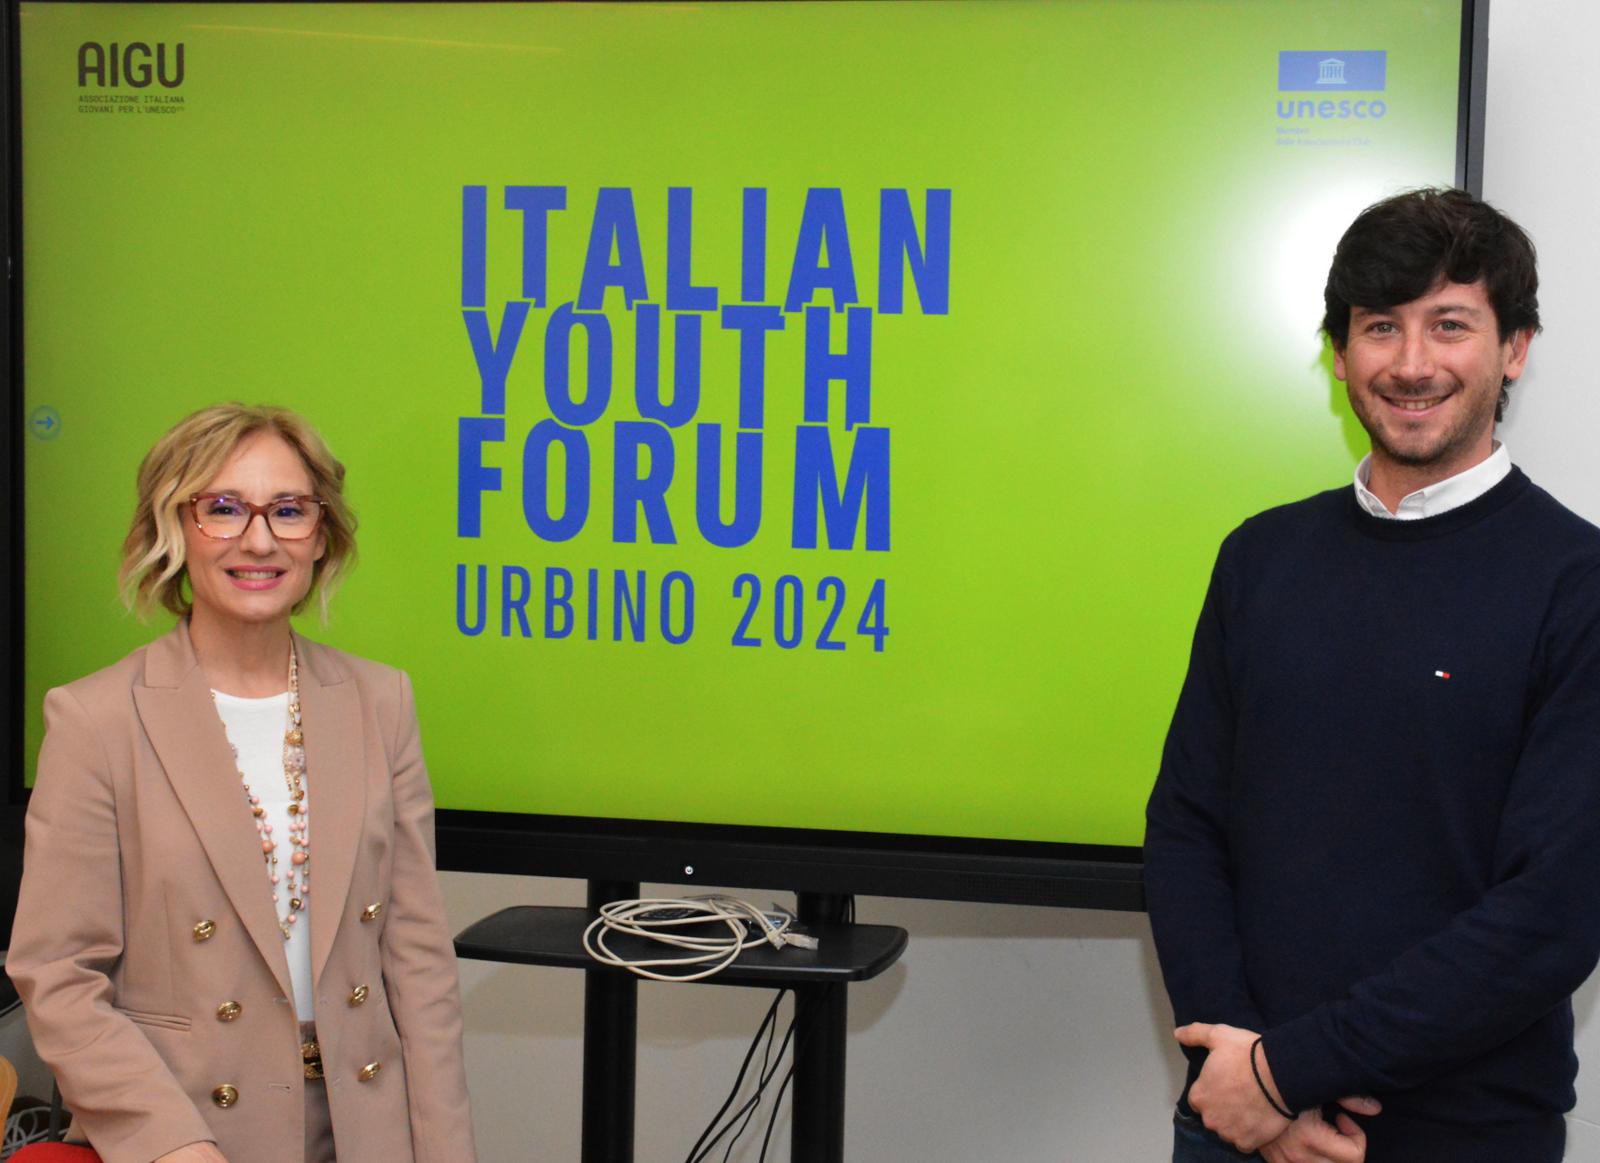 Italian Youth Forum, presentato l’evento culturale dell’associazione italiana giovani per l’Unesco che quest’anno si svolgerà a Urbino  